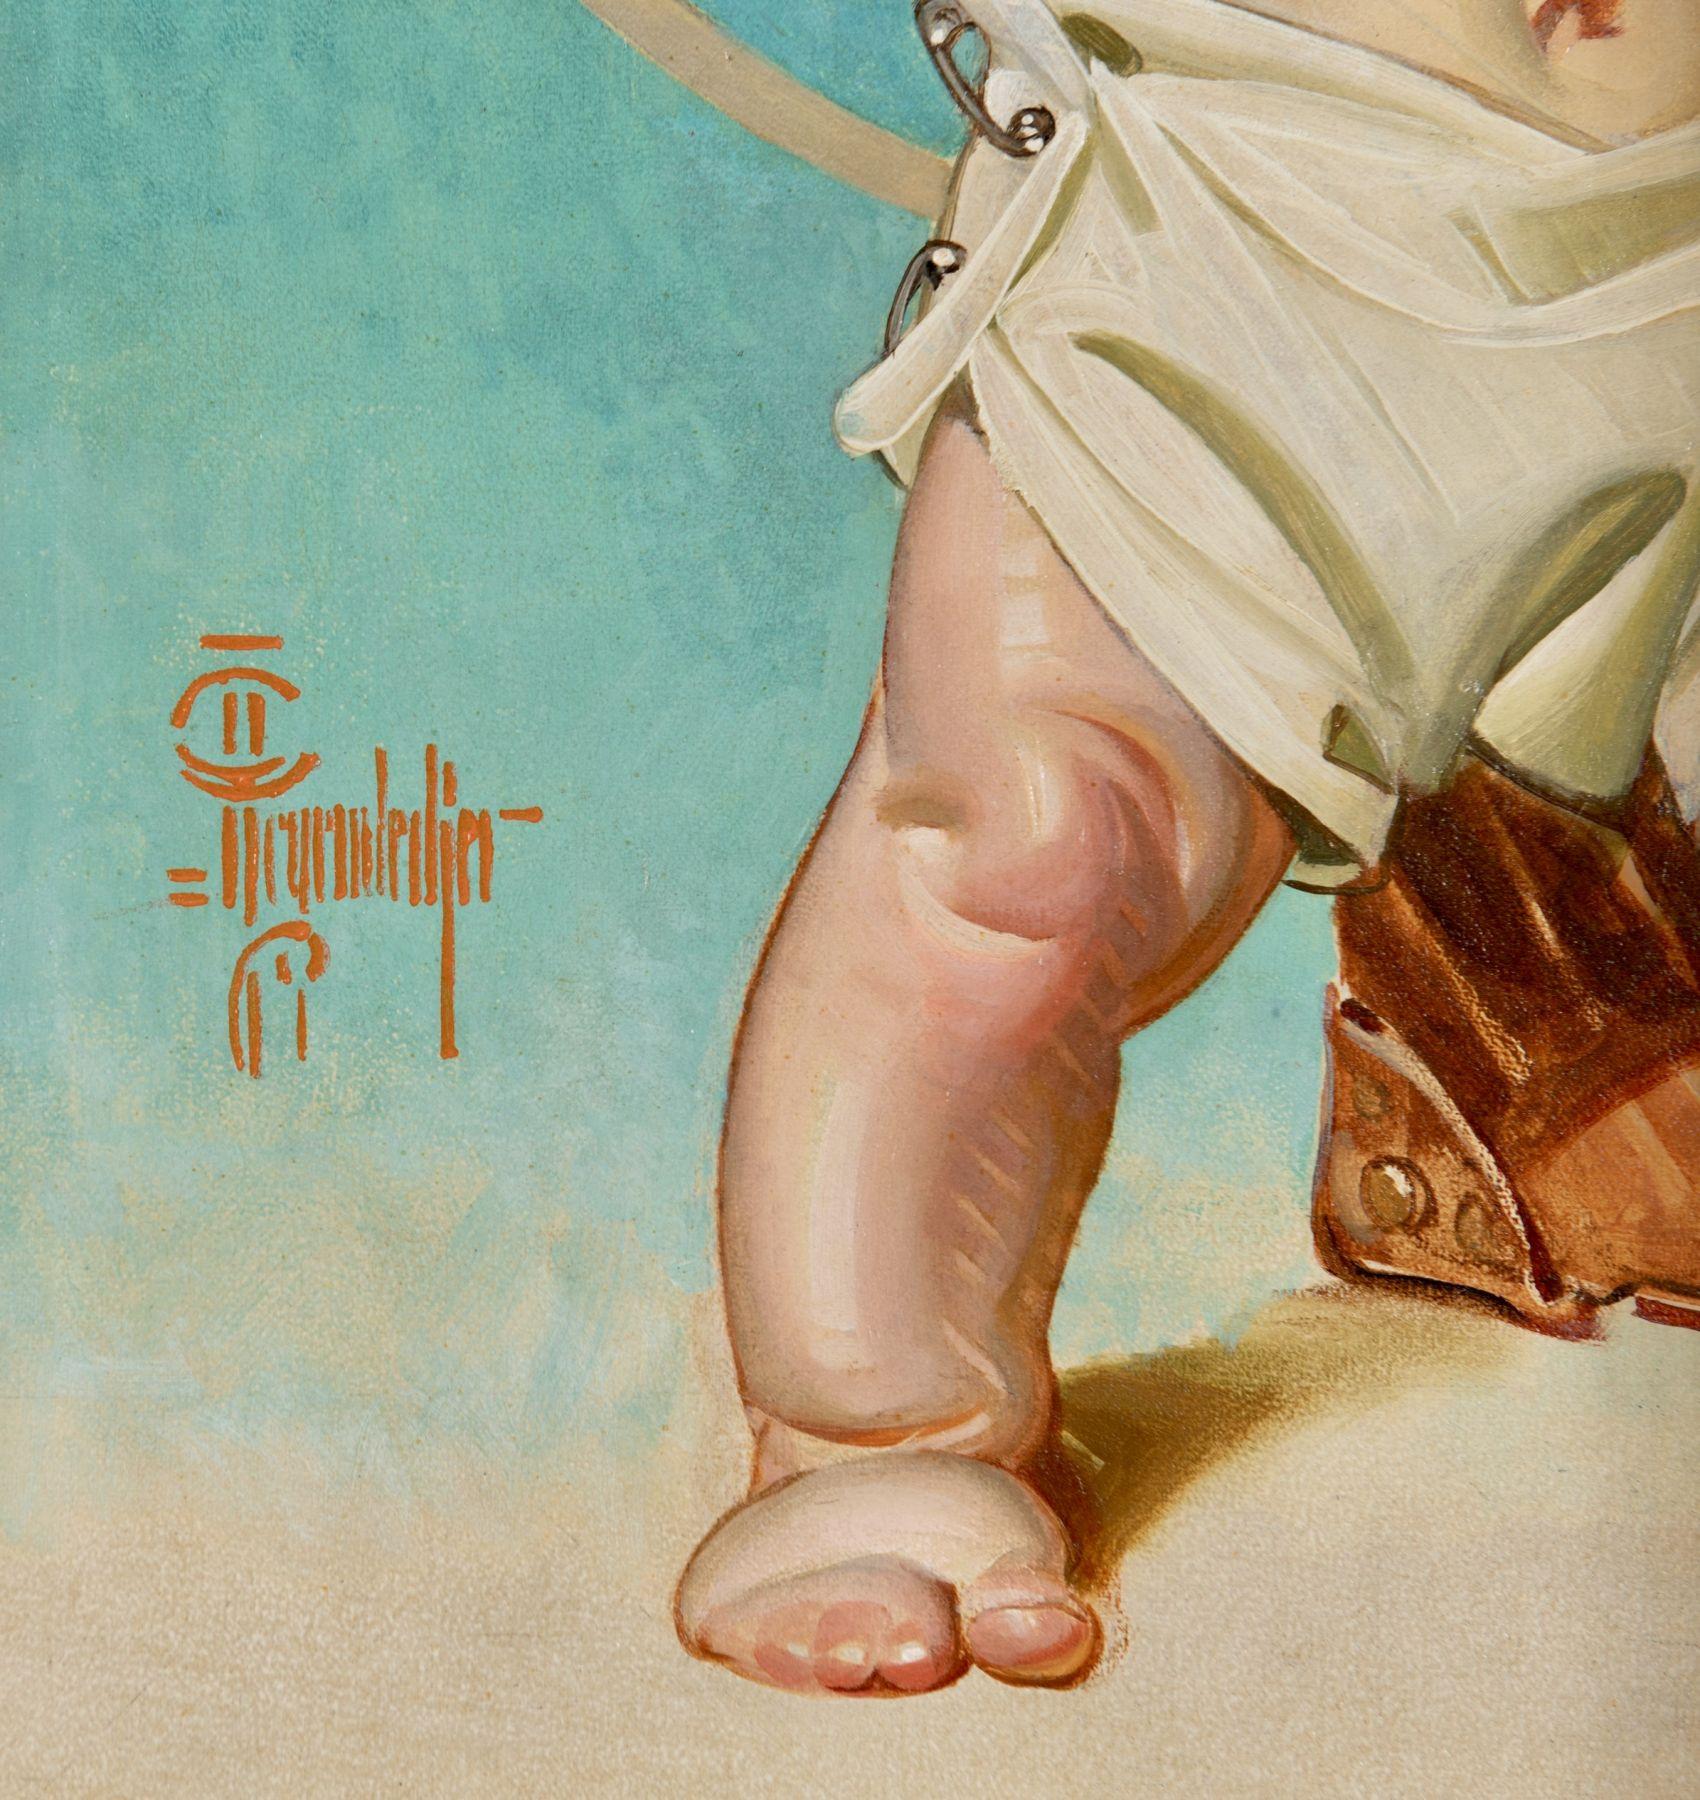 Baby Hitching to War (bébébé attachant à la guerre), Neuf ans - Painting de Joseph Christian Leyendecker